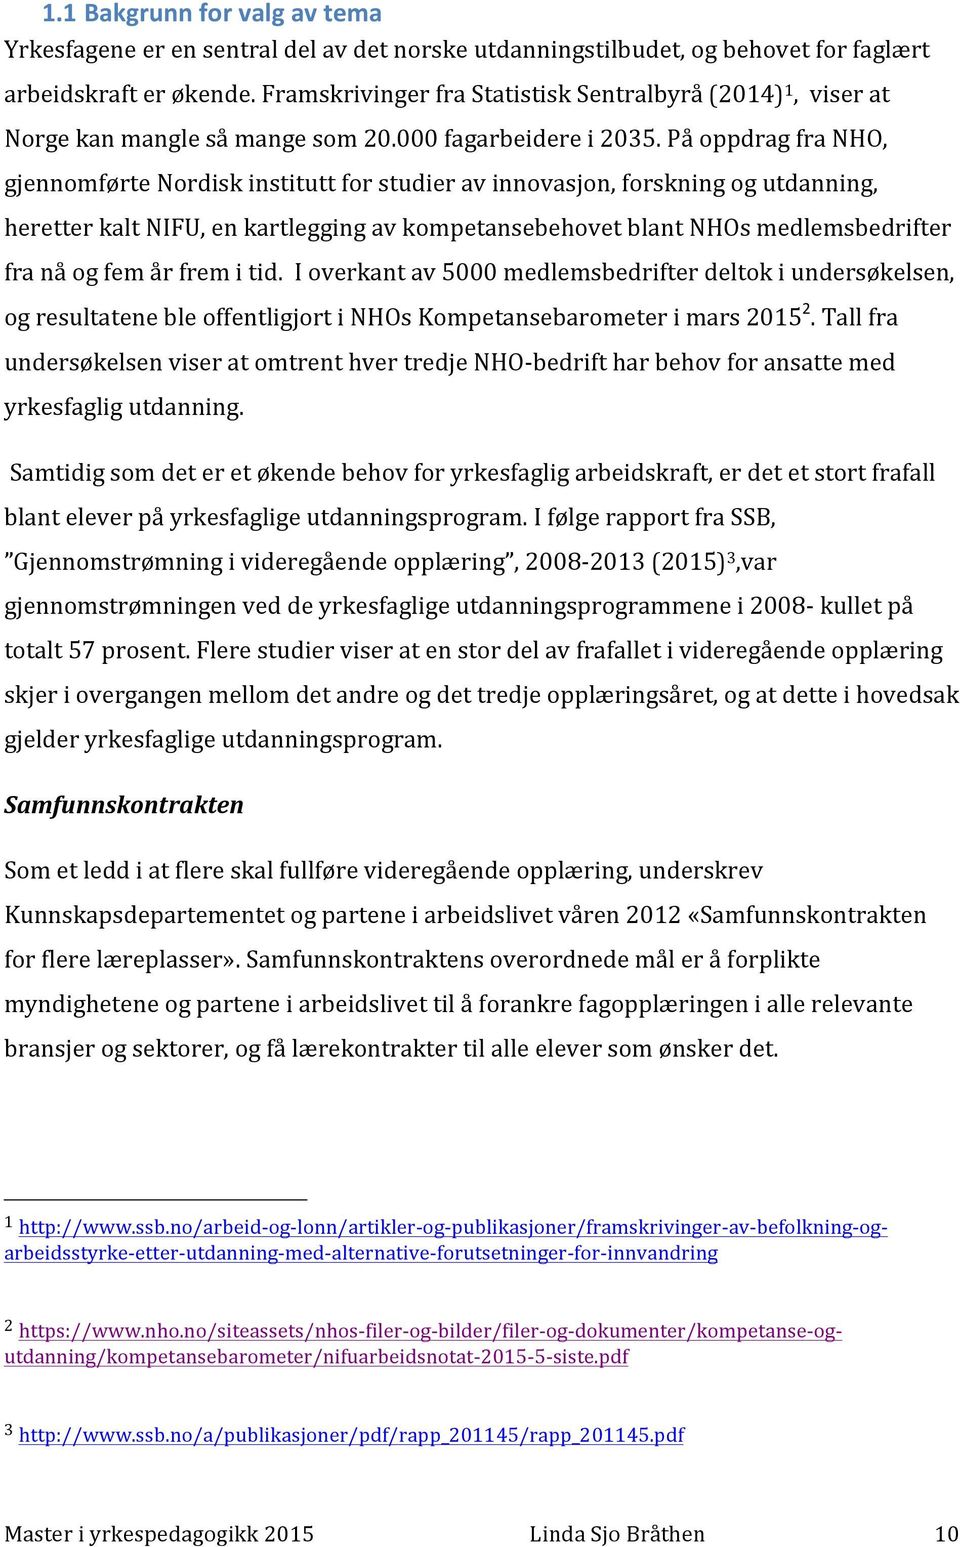 På oppdrag fra NHO, gjennomførte Nordisk institutt for studier av innovasjon, forskning og utdanning, heretter kalt NIFU, en kartlegging av kompetansebehovet blant NHOs medlemsbedrifter fra nå og fem